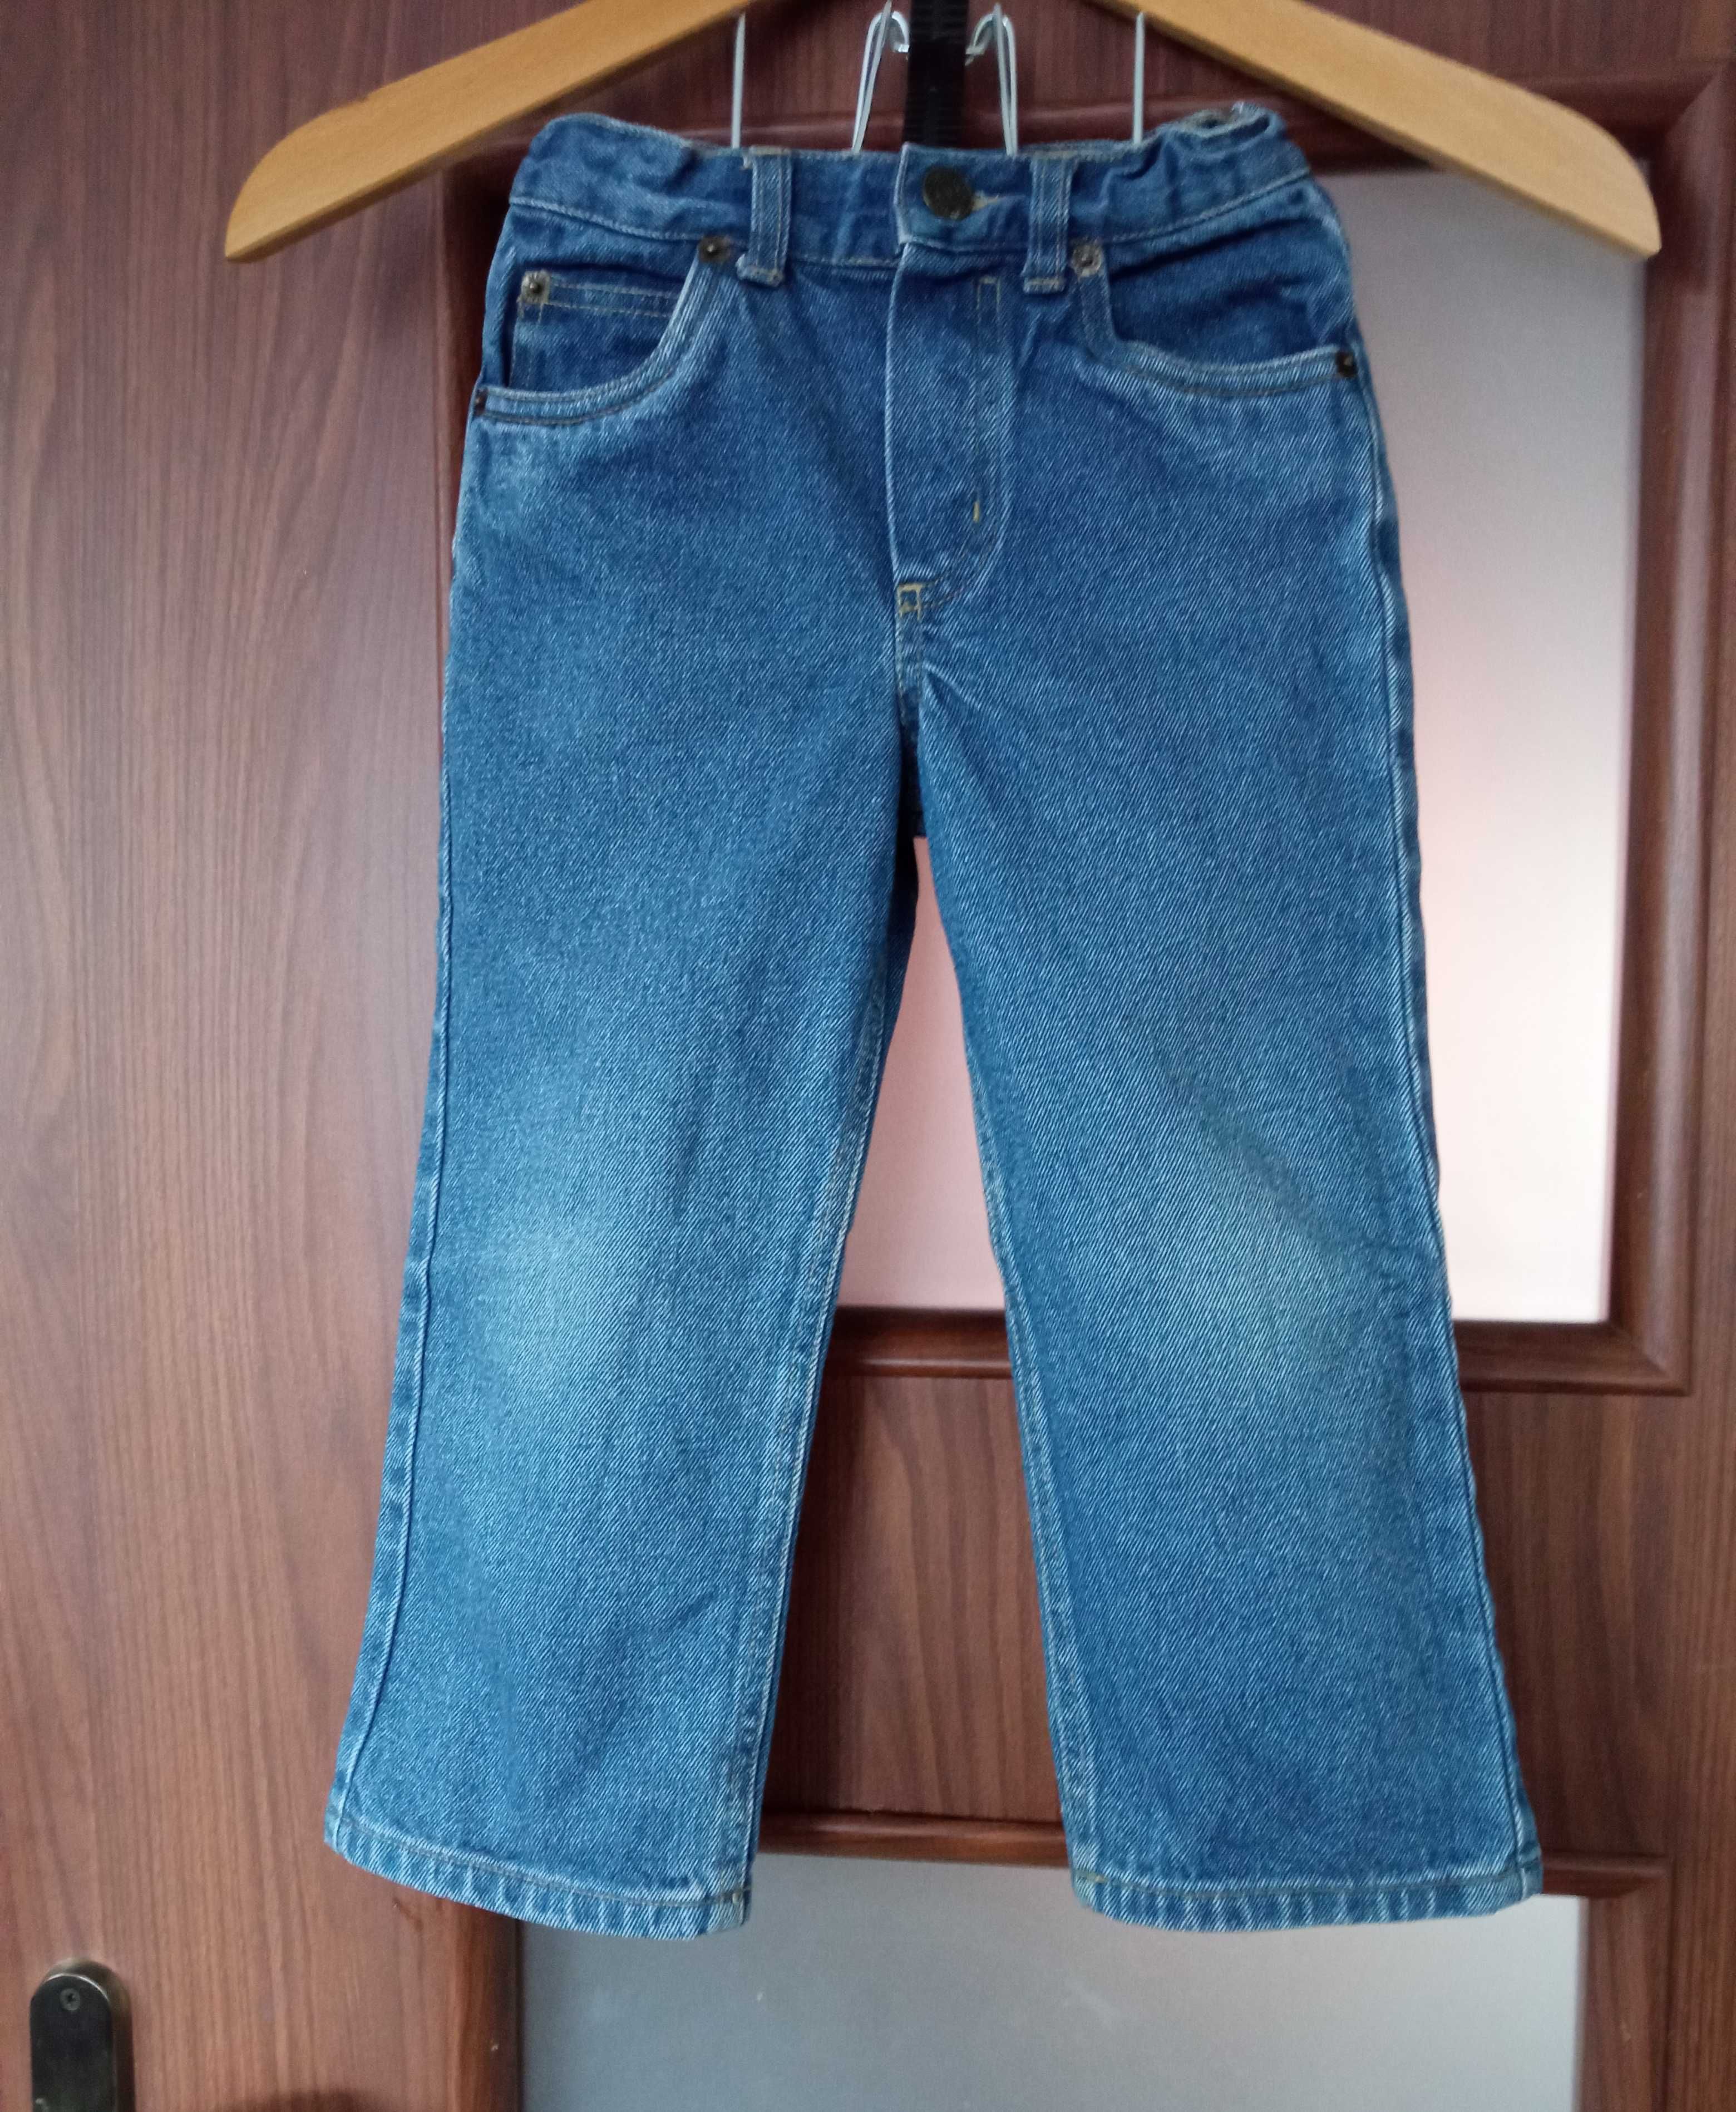 Spodnie dżinsowe Denim&Co, 3-4 lata, 104